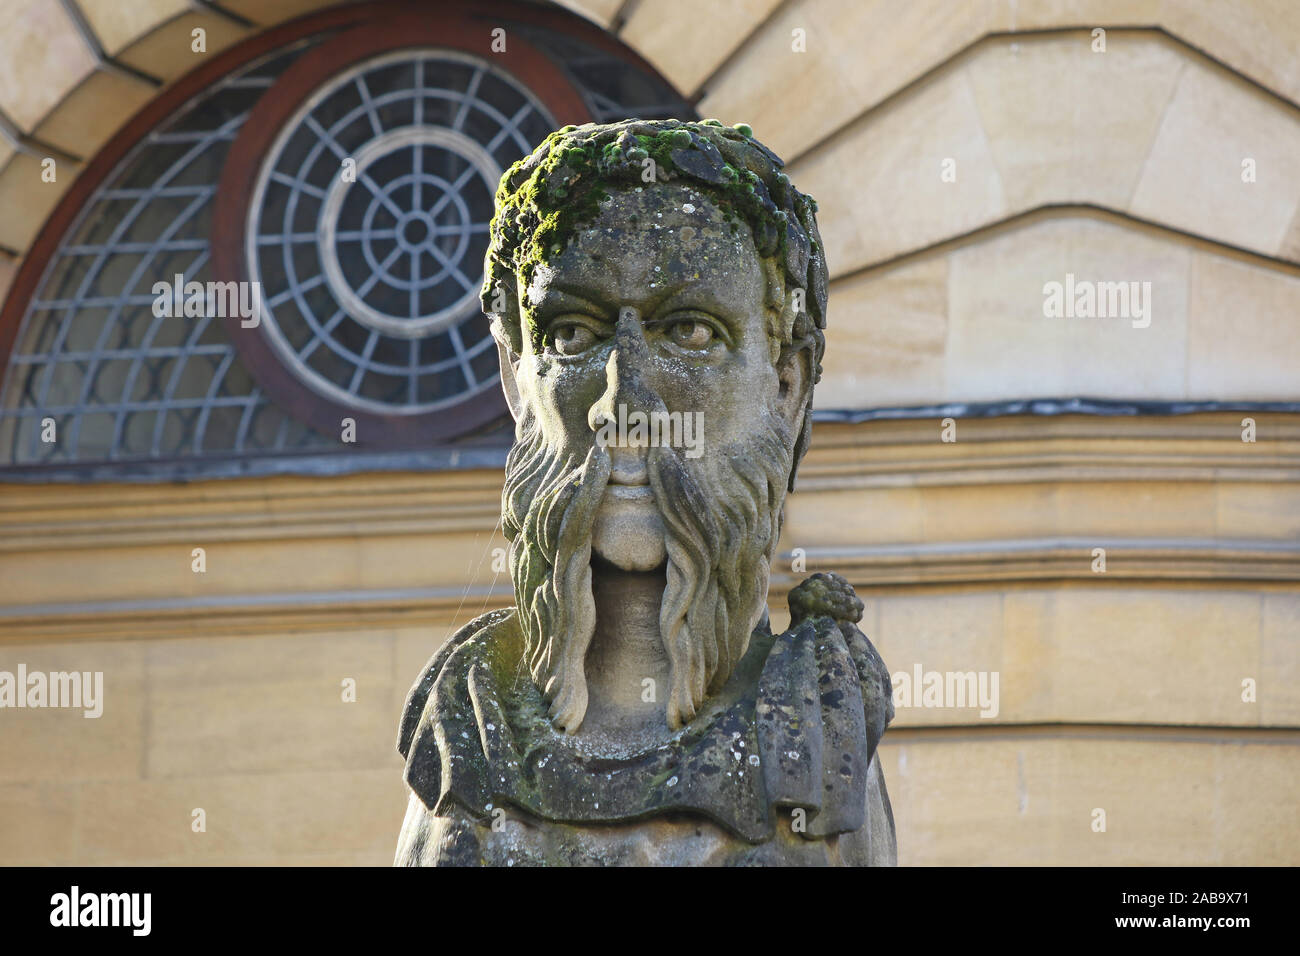 Einer der geschnitzten Kaiser oder Philosoph Köpfe um den Umfang der Sheldonian Theatre in Oxford, England, jeder hat eine andere Bart Stockfoto